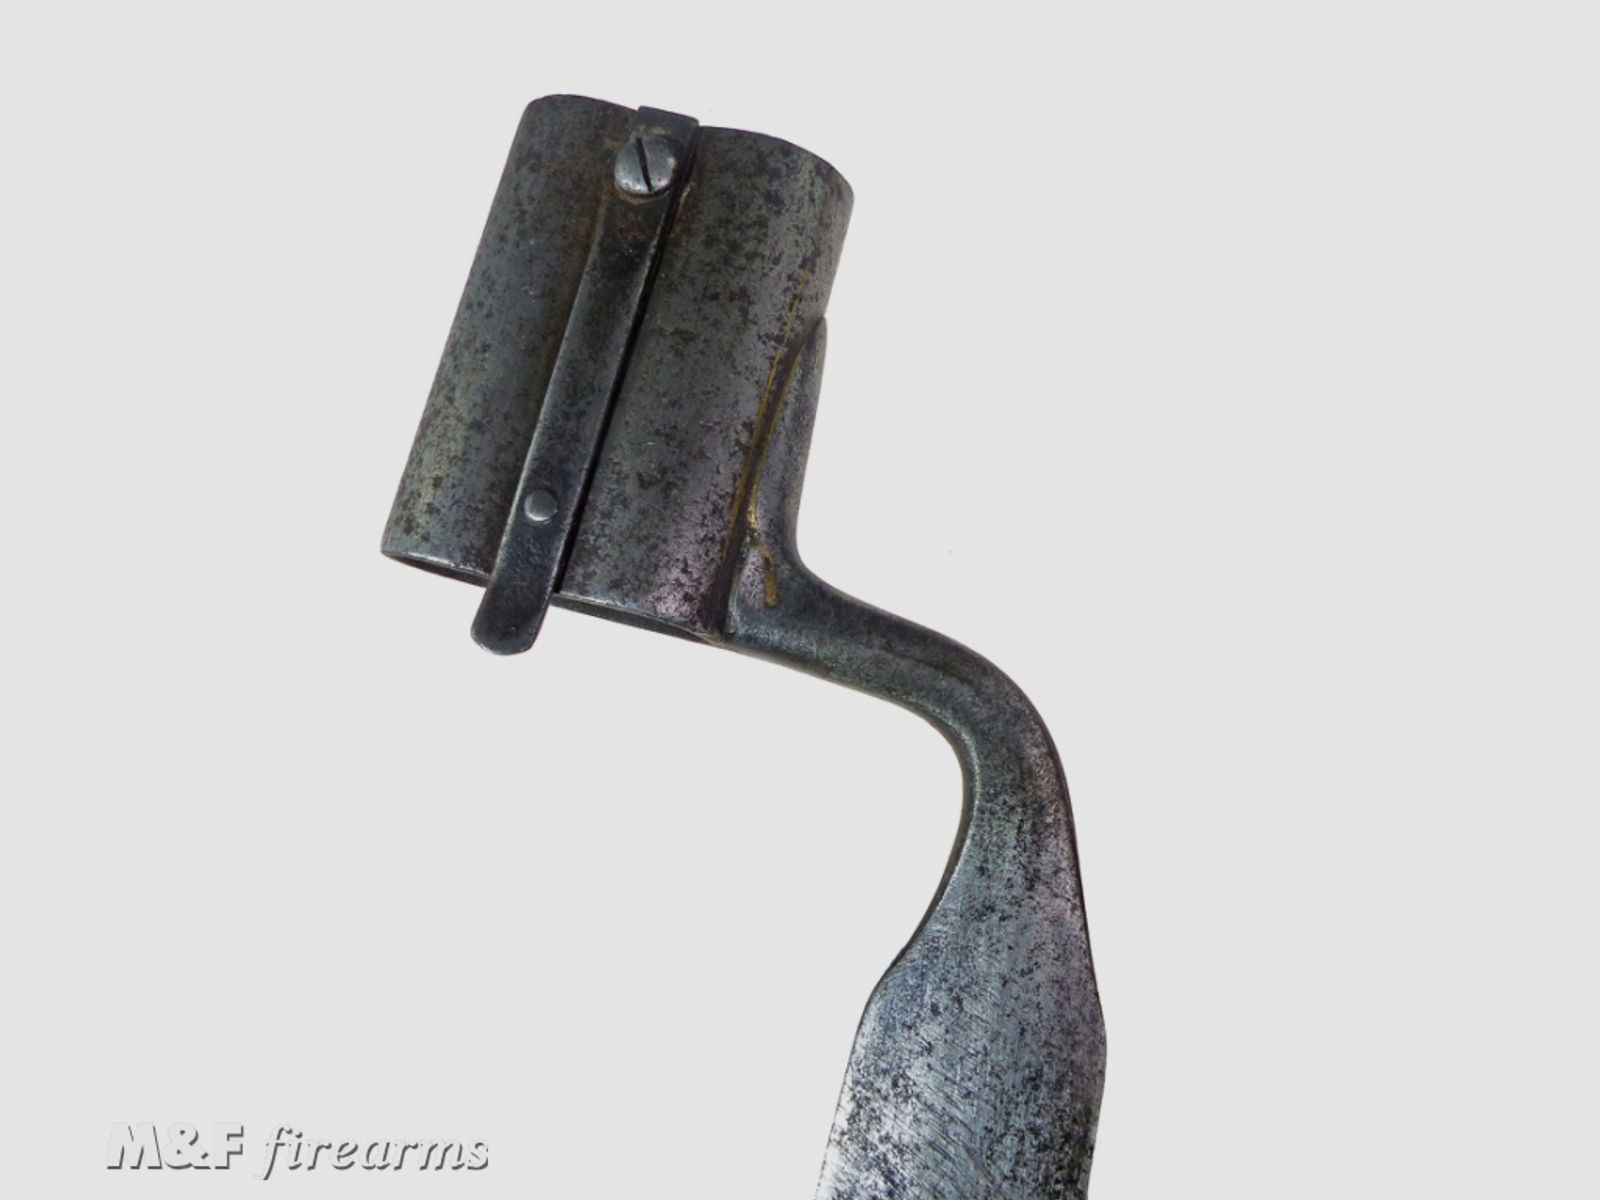 Seltenes jagdliches Doppellauf Tüllen Bajonett (Dillenbajonett) für Schrotflinte (Querflinte) 18. oder 19. Jahrhundert Hersteller unbekannt